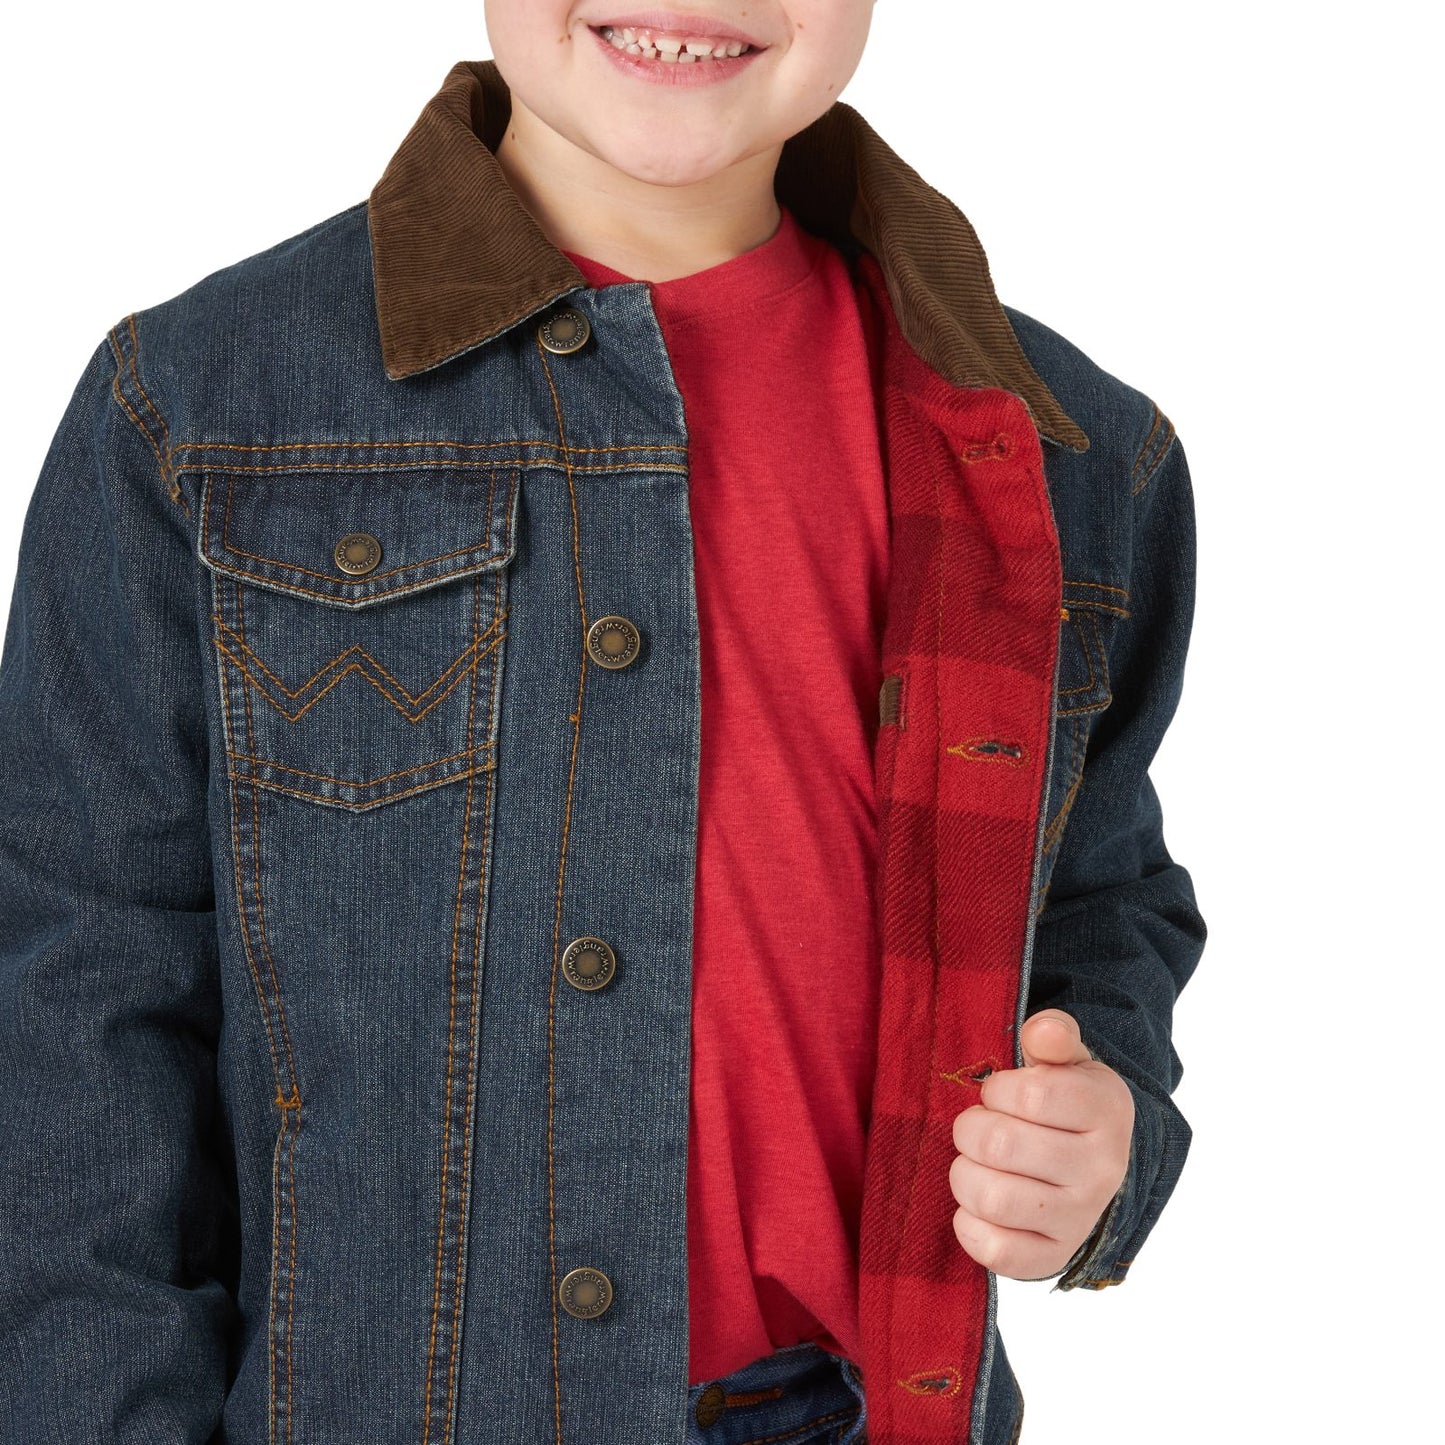 Boy's Wrangler Blanket Lined Rustic Blue Denim Jacket